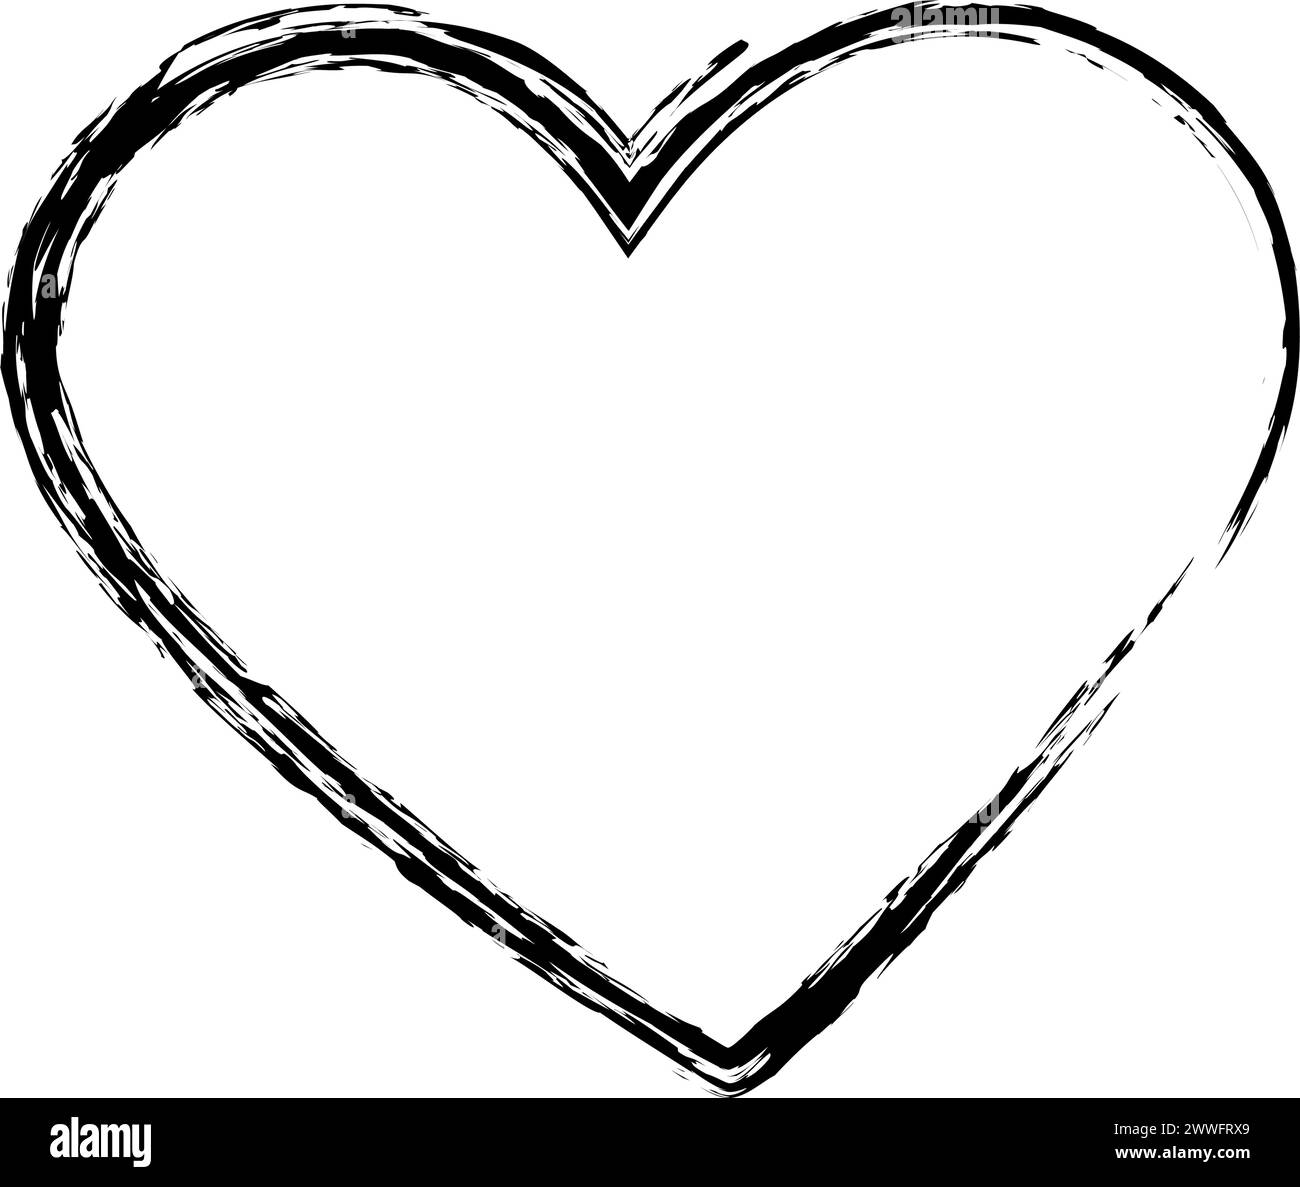 Contorno stilizzato forma del cuore disegnata con pennello a carbone. Concetto di design Black Day Greetings. Isolare. EPS. Vettore per carte, poster, striscioni, brochure, affissioni o Web, prezzo, etichetta, promozione Illustrazione Vettoriale